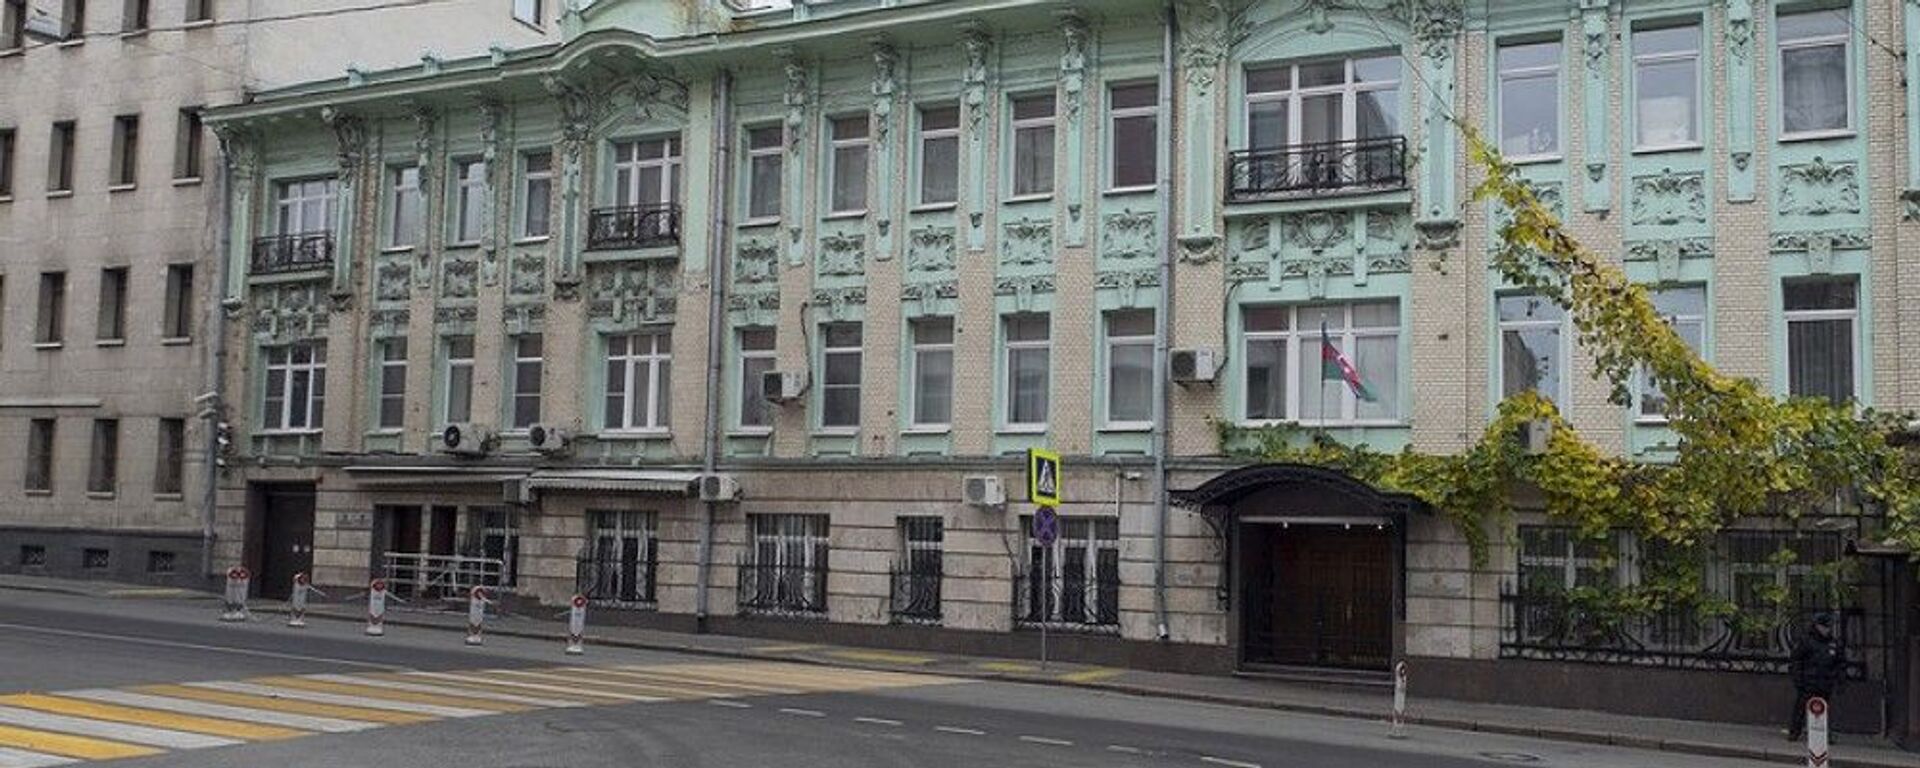 Здание посольства Азербайджана в Москве, фото из архива - Sputnik Азербайджан, 1920, 12.01.2021